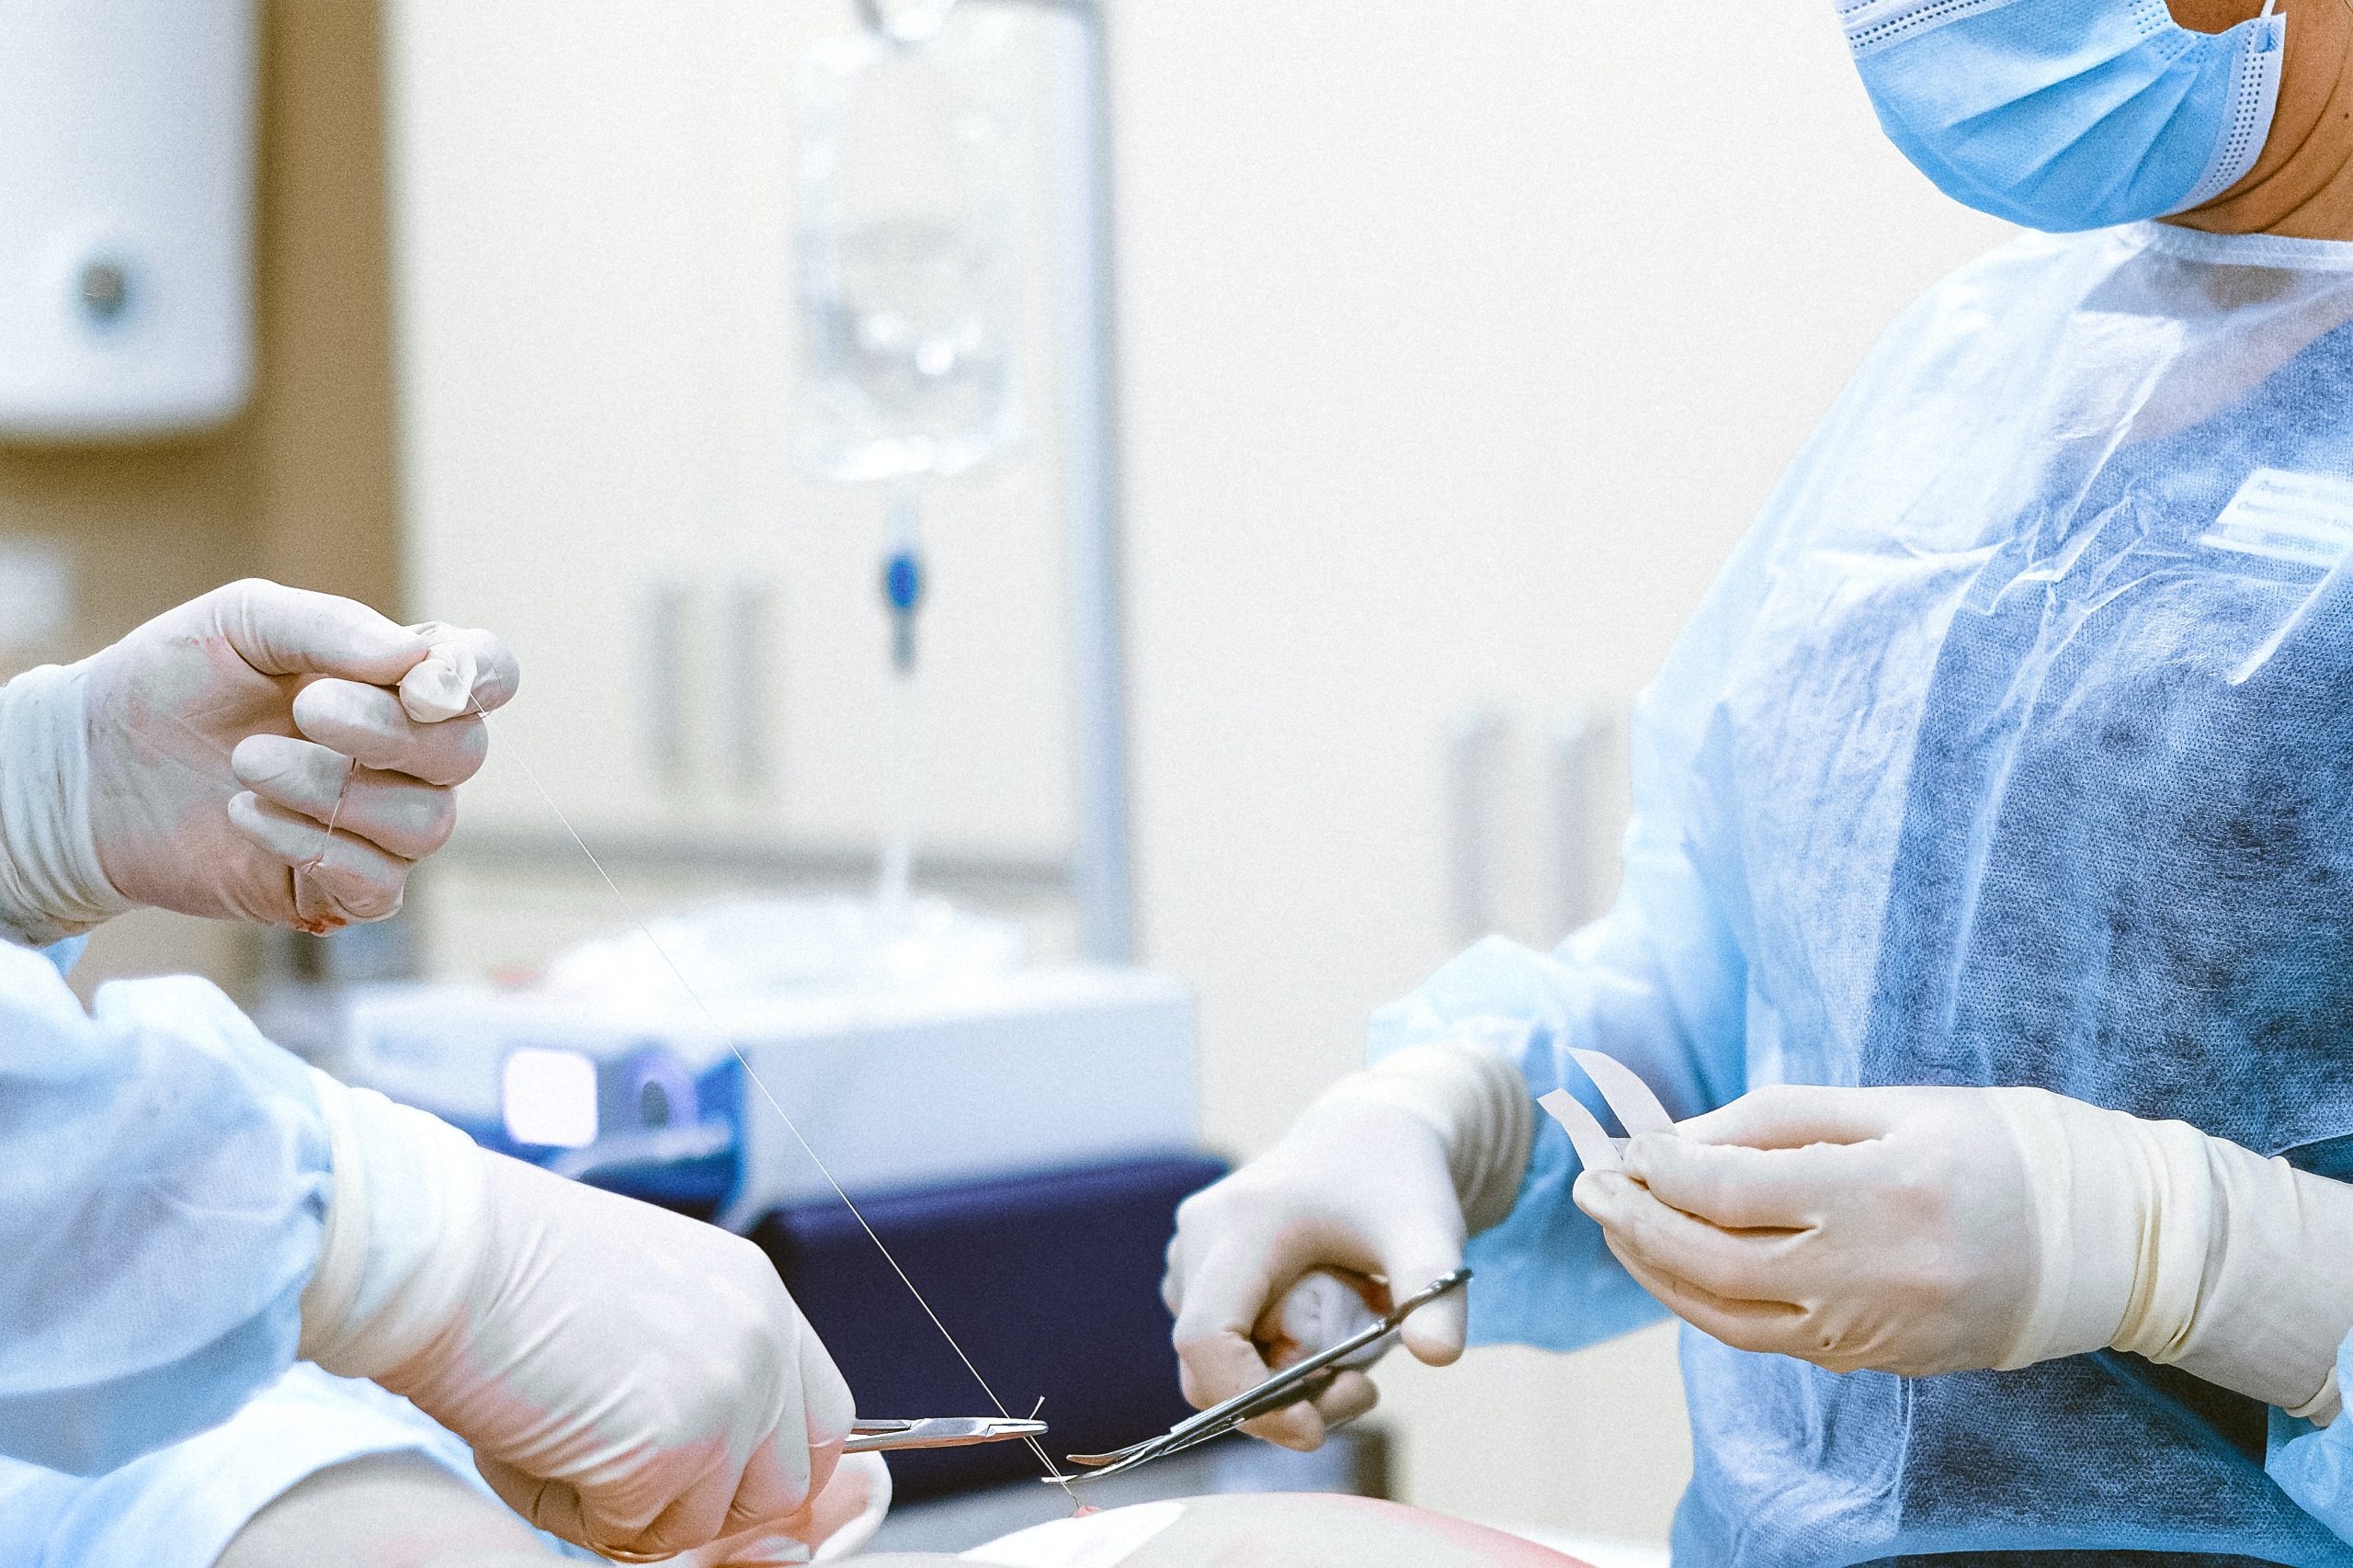 Dlaczego chirurdzy w czasie operacji stosują rękawice?